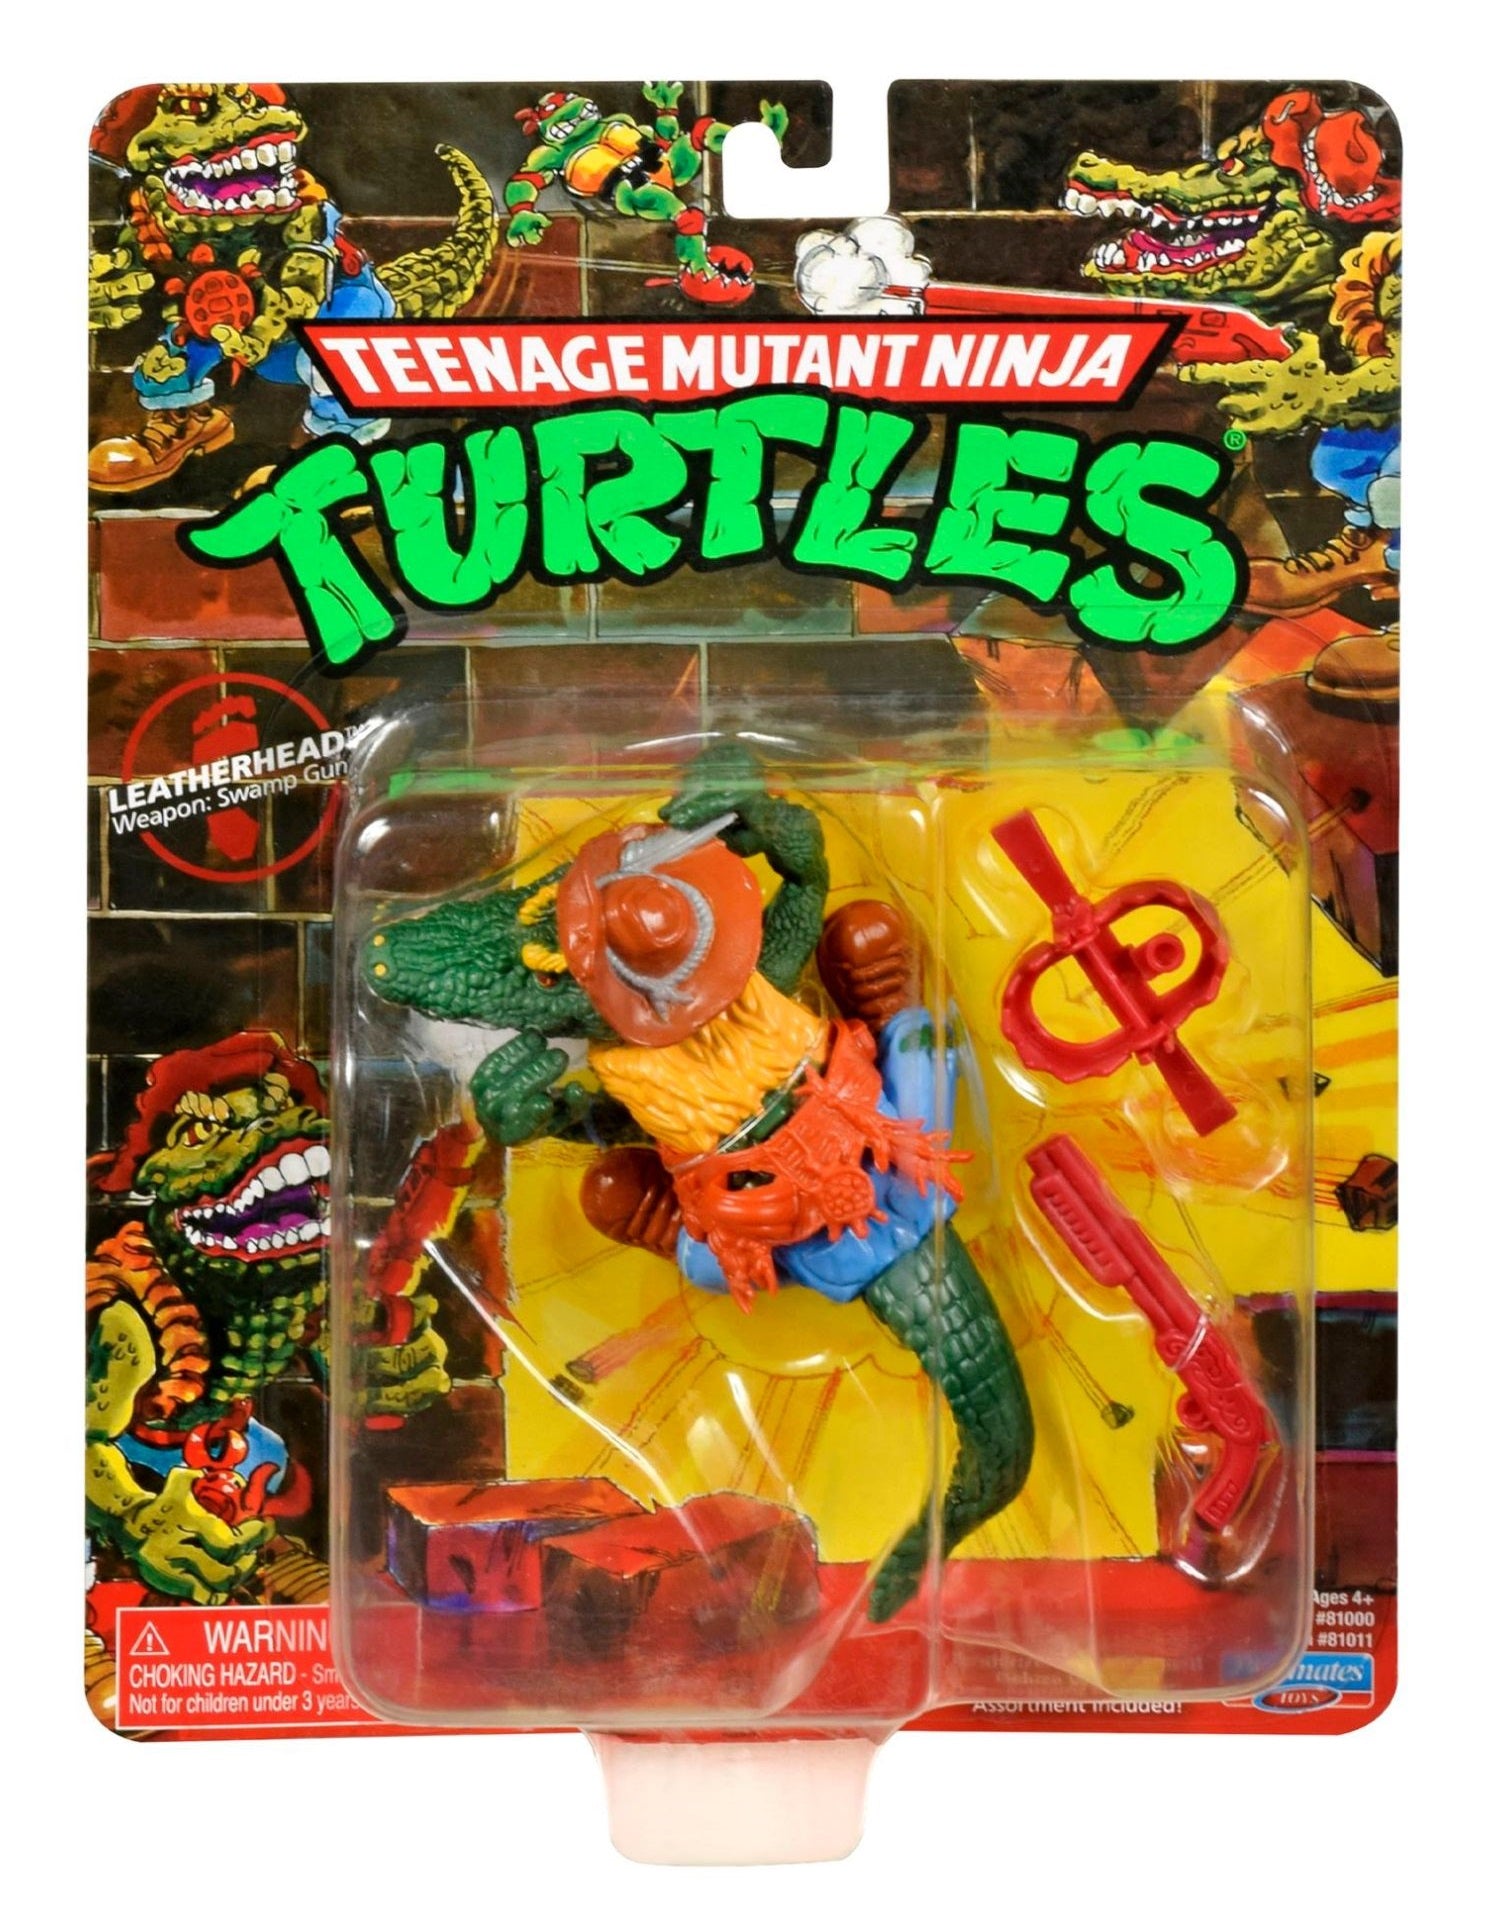 Teenage Mutant Ninja Turtles Classic - Leatherhead